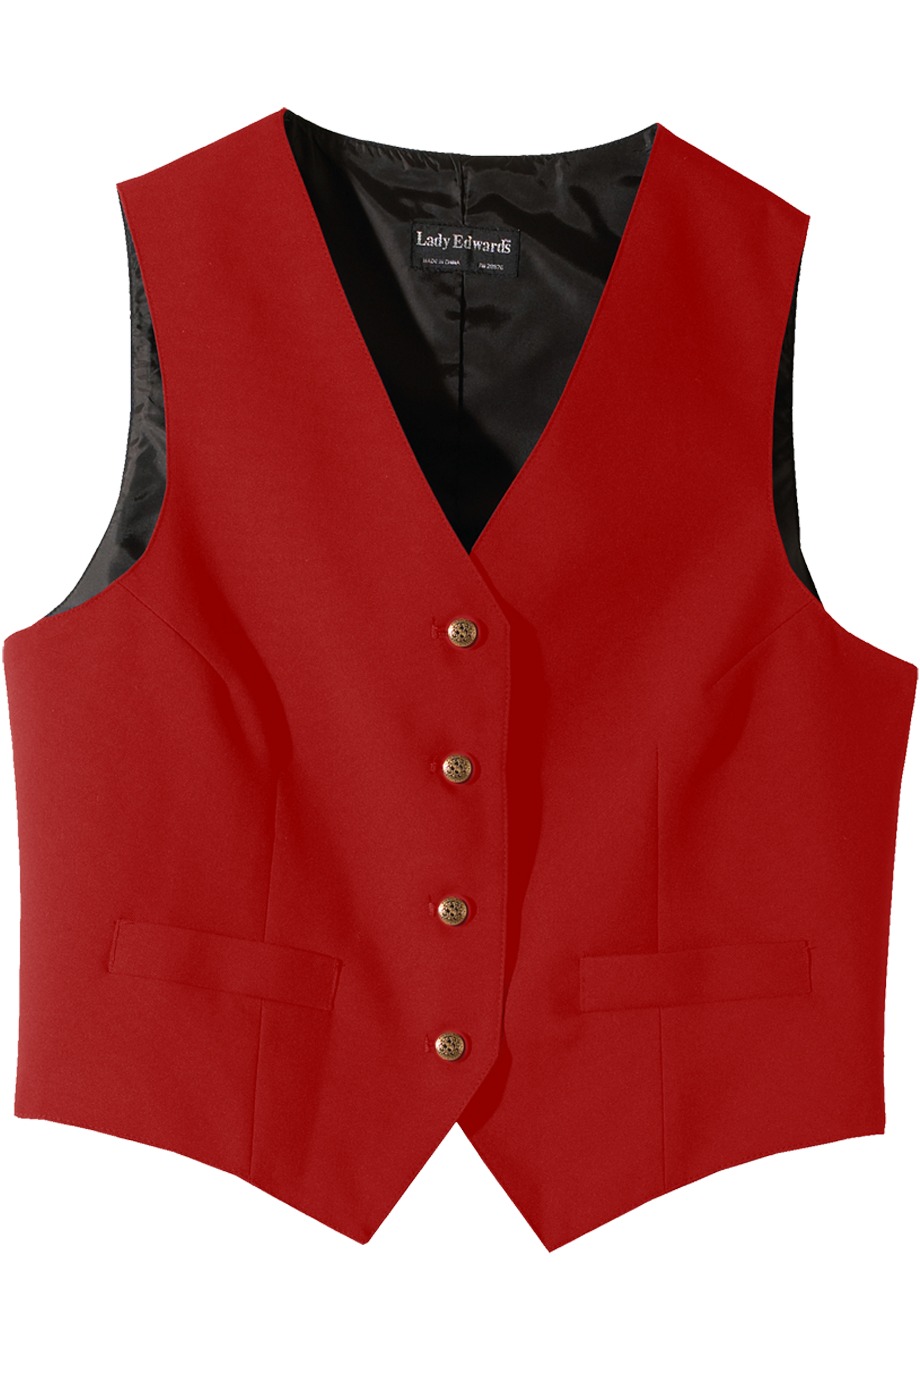 Edwards Garment 7490 - Women's Economy Vest